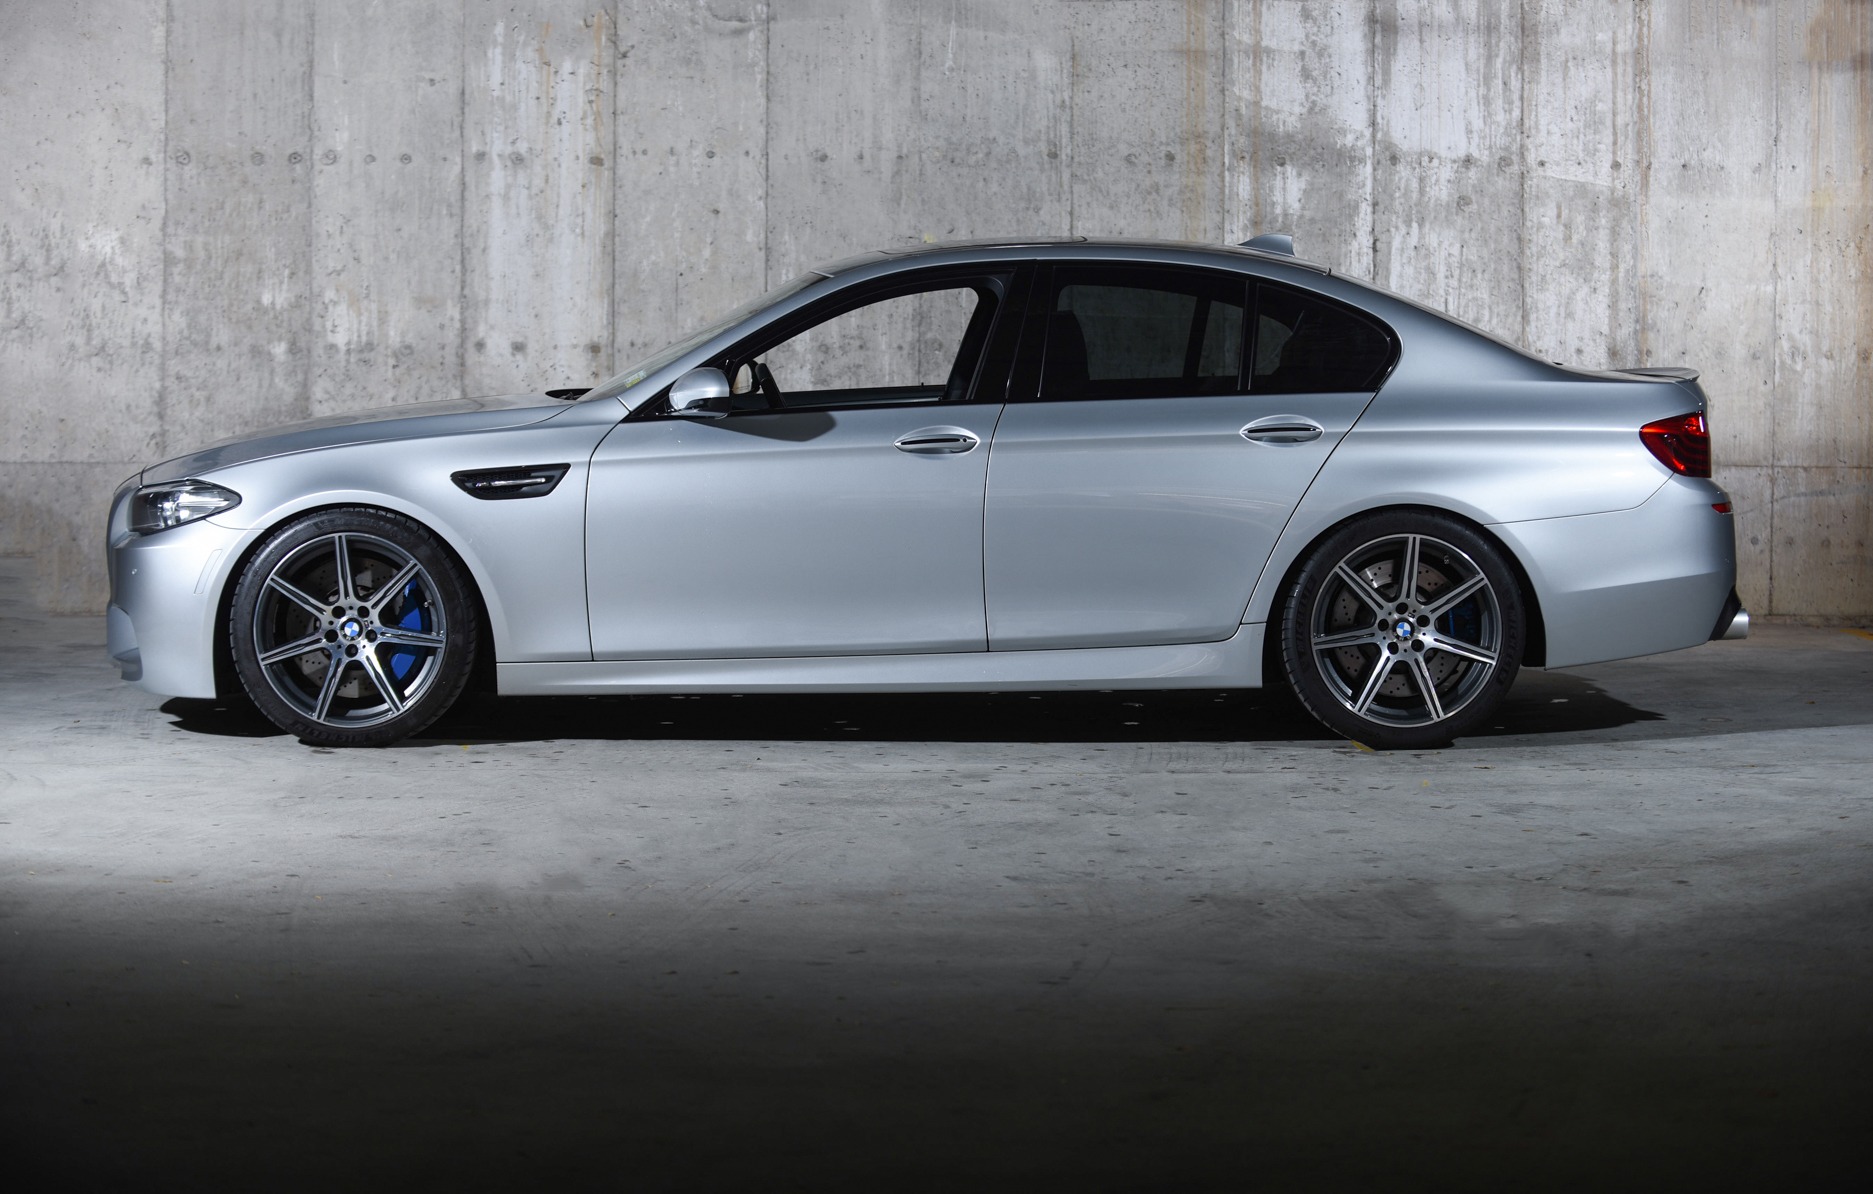 2014 BMW 116i (9.000 Km) - The Garage